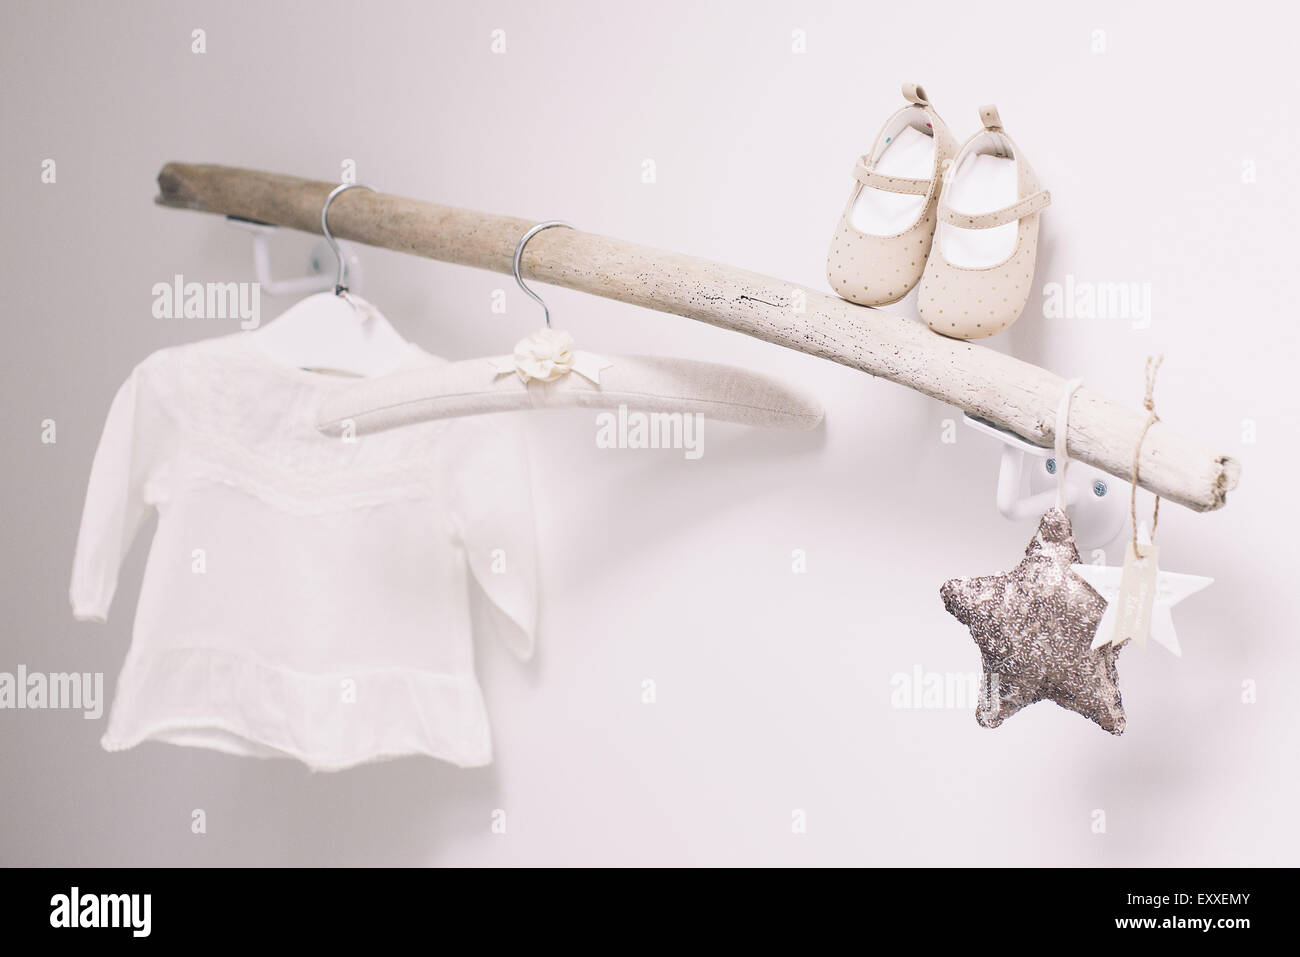 Baby clothing Stock Photo